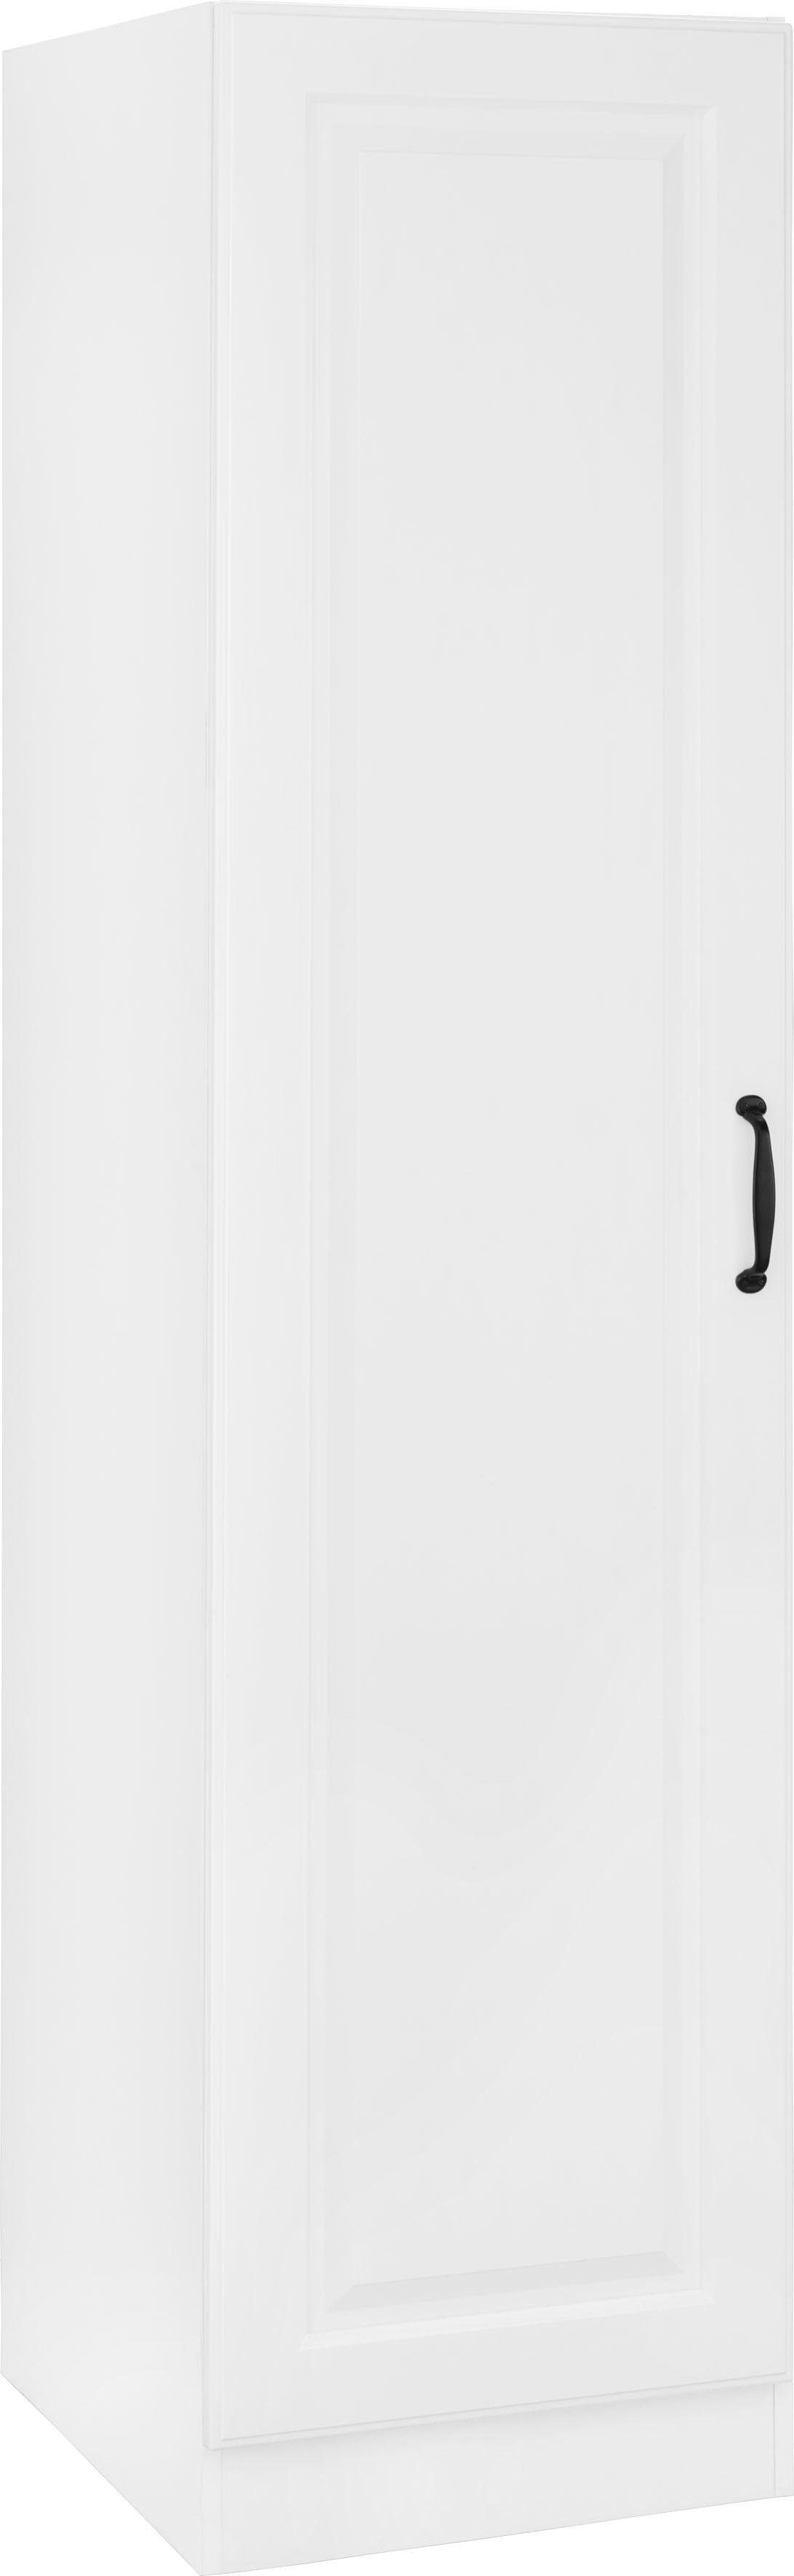 wiho Küchen Vorratsschrank Erla 50 cm breit mit Kassettenfront weiß/weiß | weiß